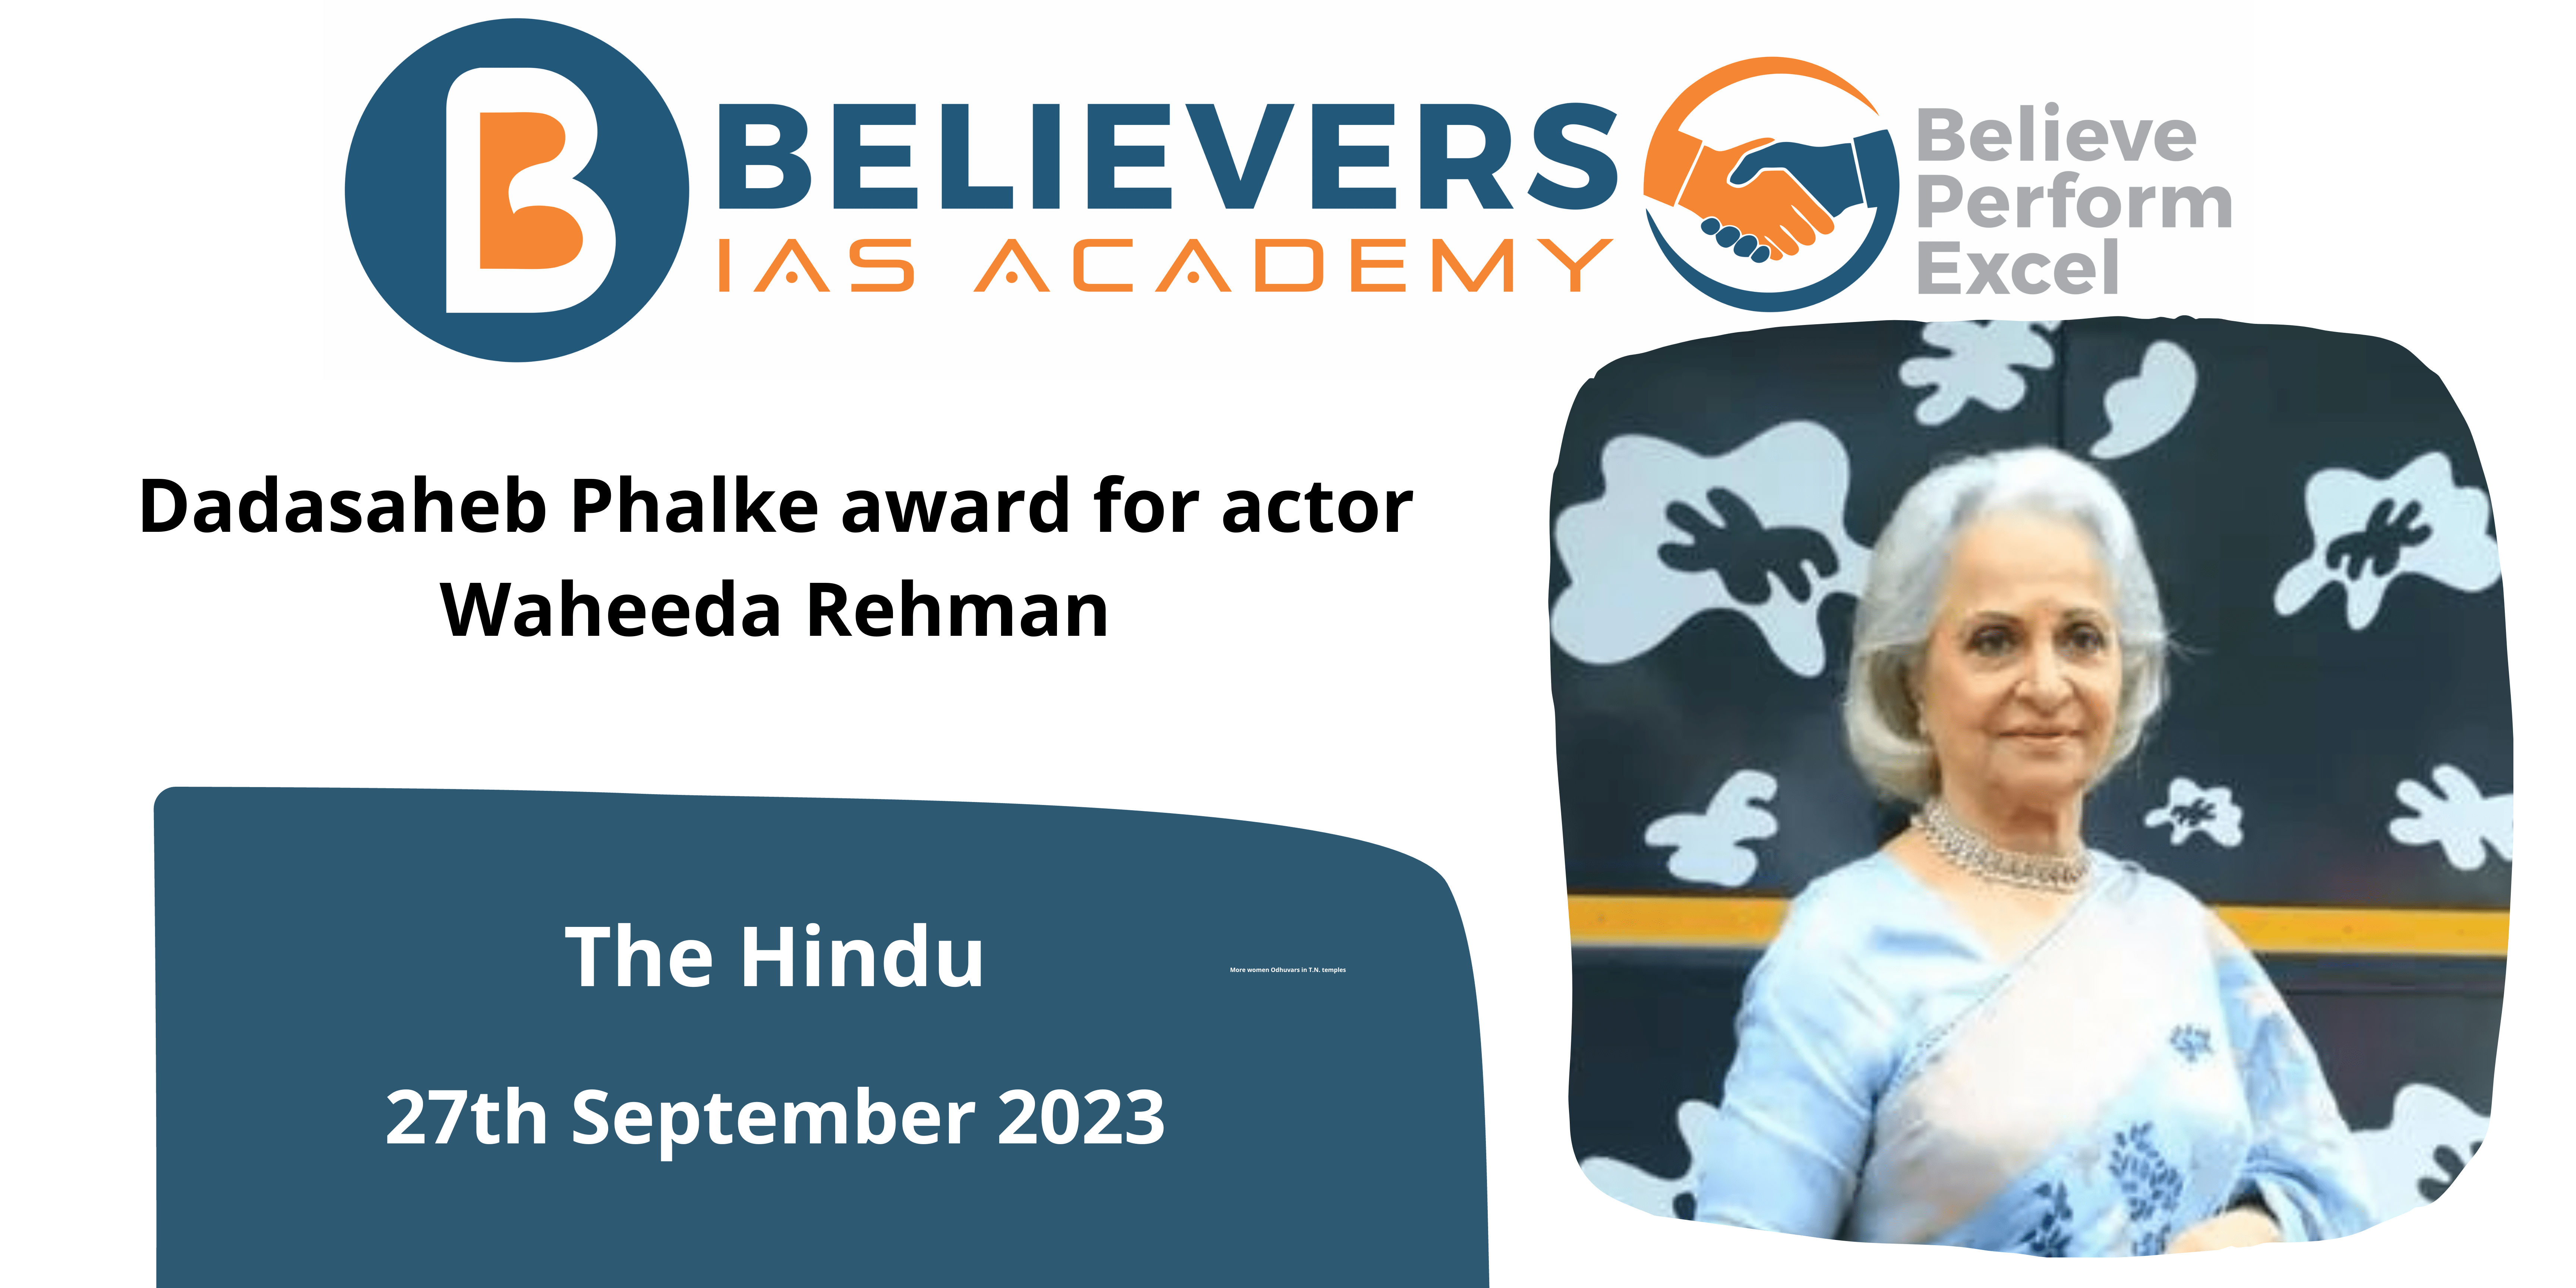 Dadasaheb Phalke award for actor Waheeda Rehman